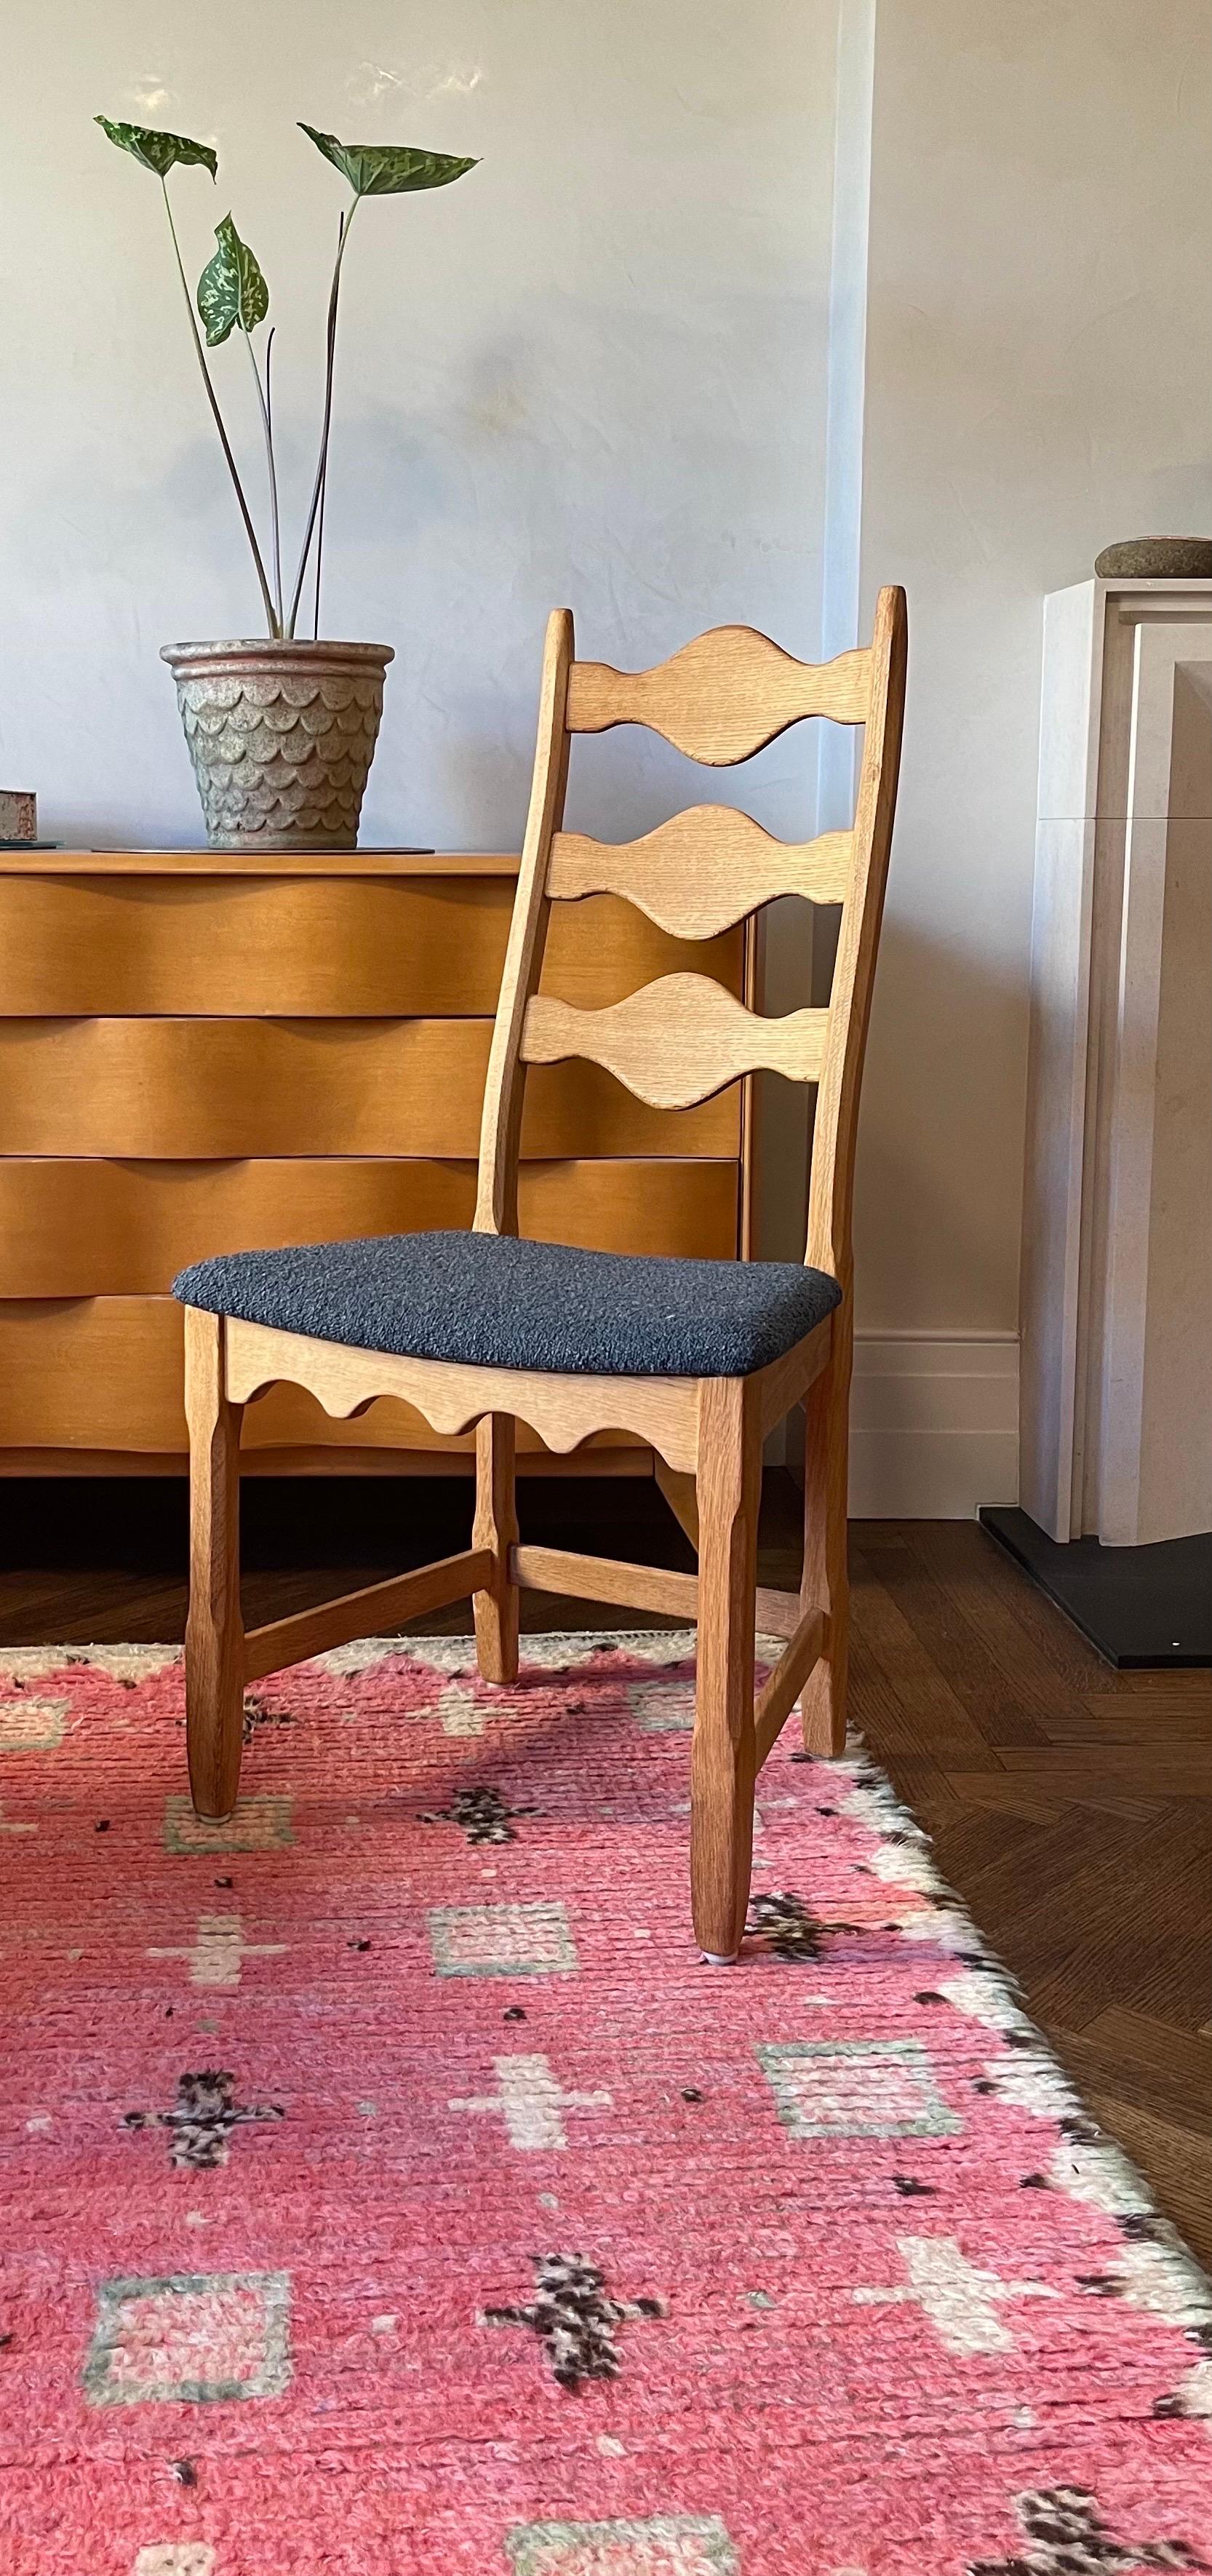 Satz von 6 Henning Kjaernulf Esszimmerstühlen von Nyrup Møbelfabrik, 1960/70er Jahre. 

Die Portman Gallery freut sich, Ihnen diese elegant proportionierten Esszimmerstühle mit hoher Rückenlehne aus Eichenholz anbieten zu können, die an den Leisten